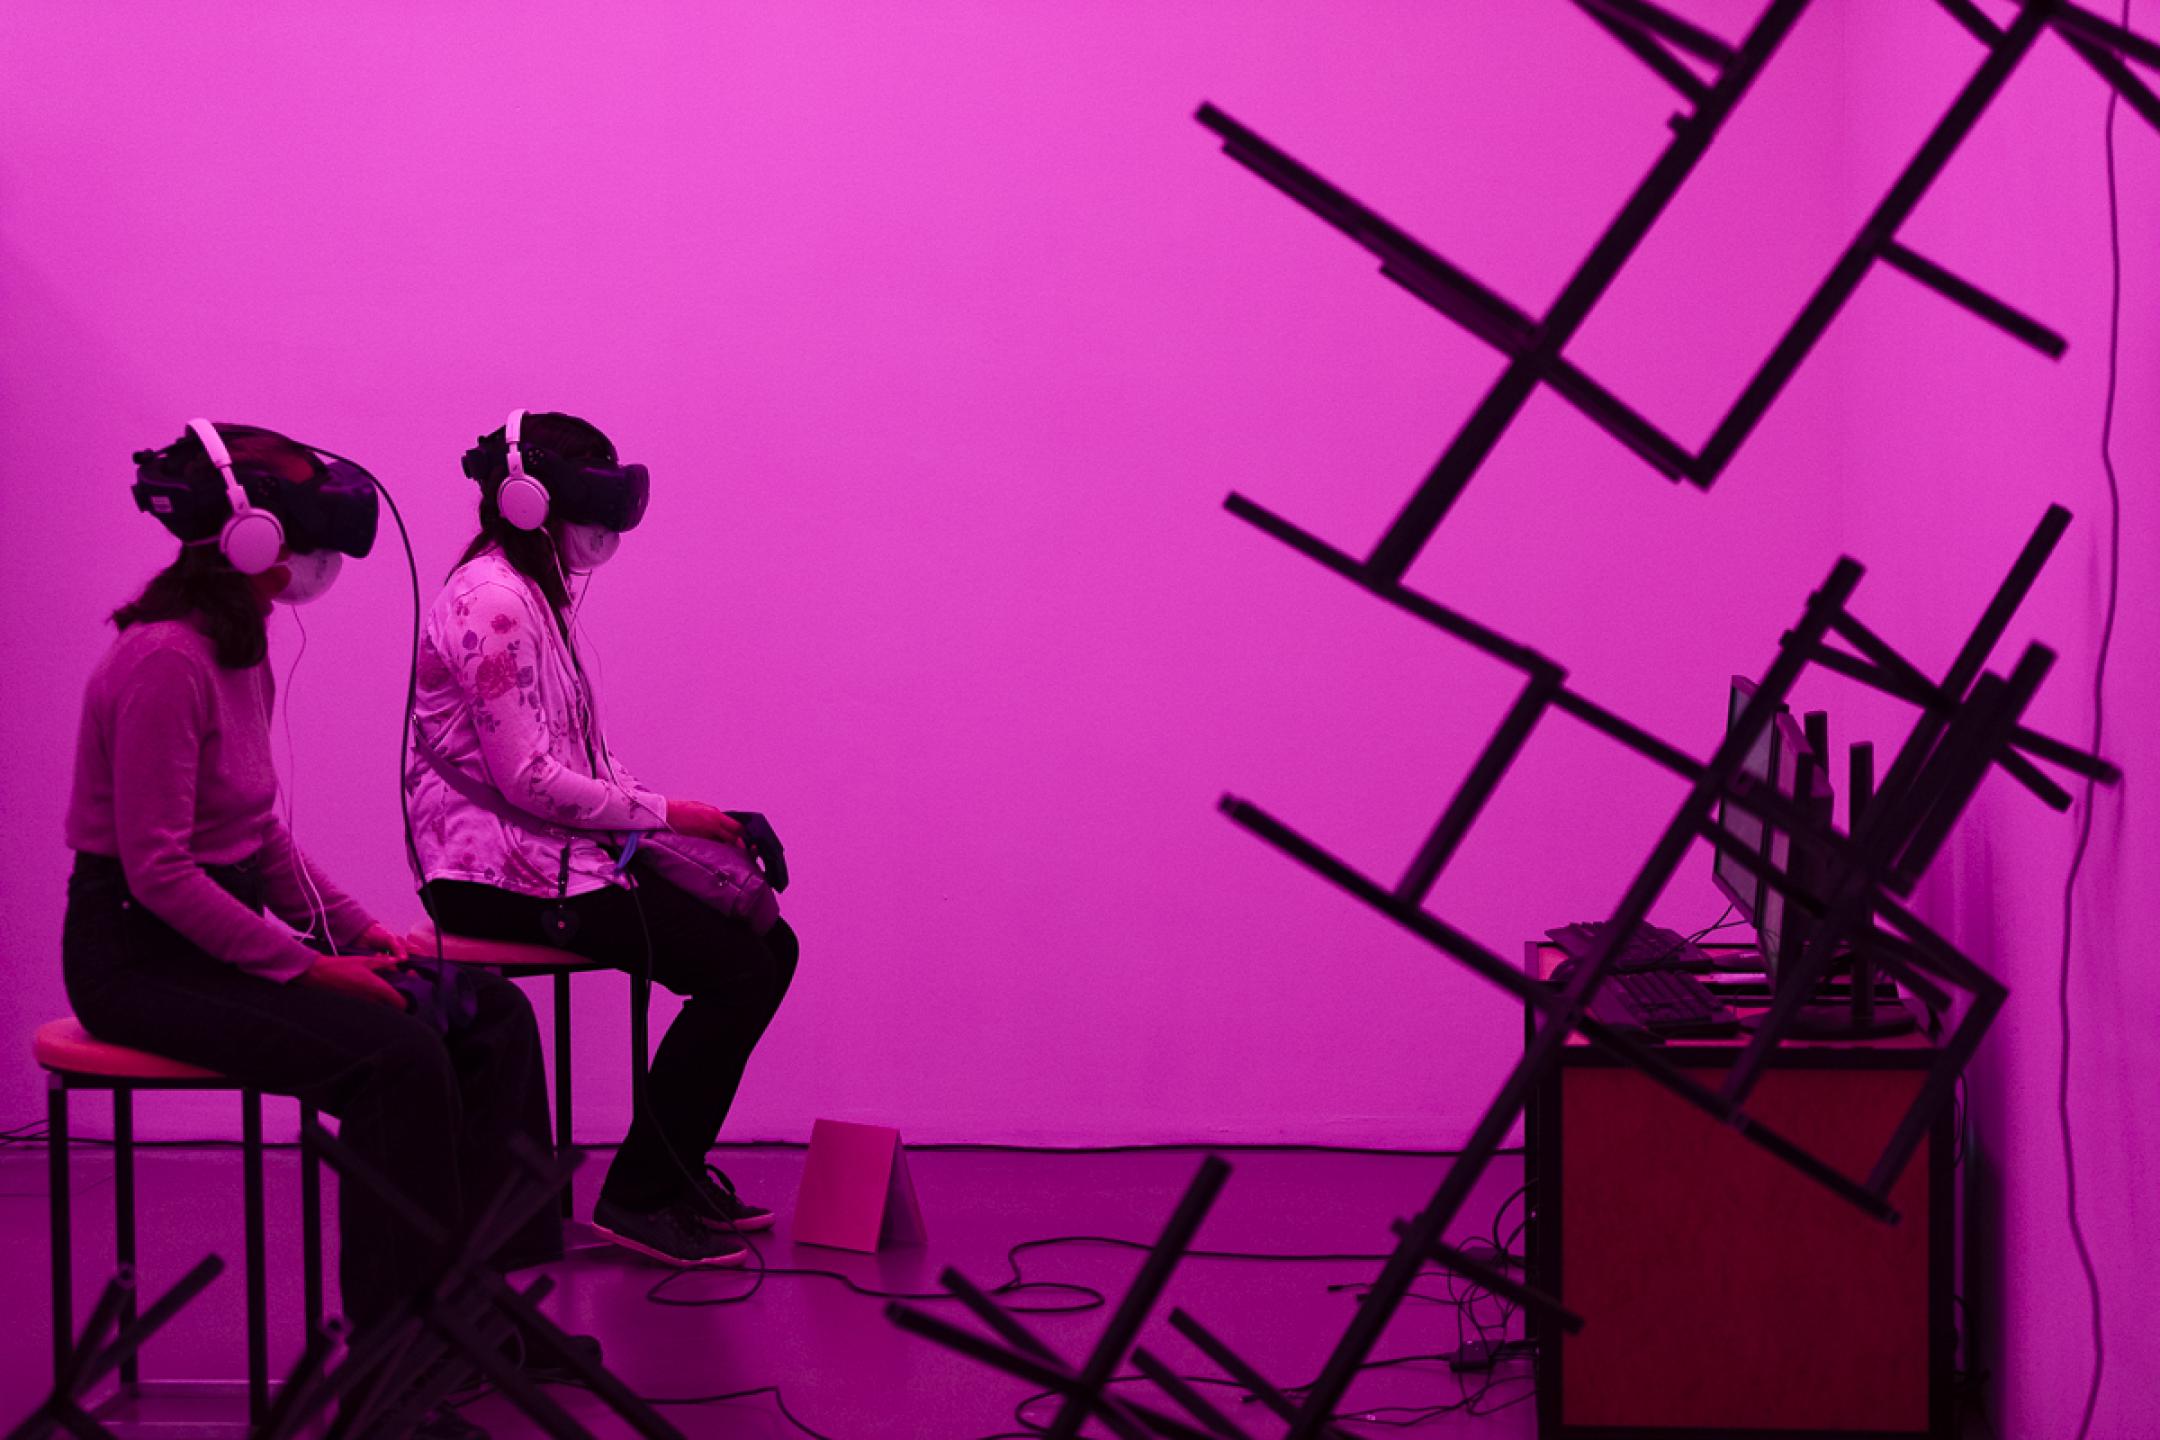 Zwei Frauen sitzen nebeneinander auf Hockern, beide tragen VR-Brillen. Der Raum um sie herum ist in pinkes Licht getaucht, an der Wand hängen abstrakte Gebilde aus Stahlgestängen.